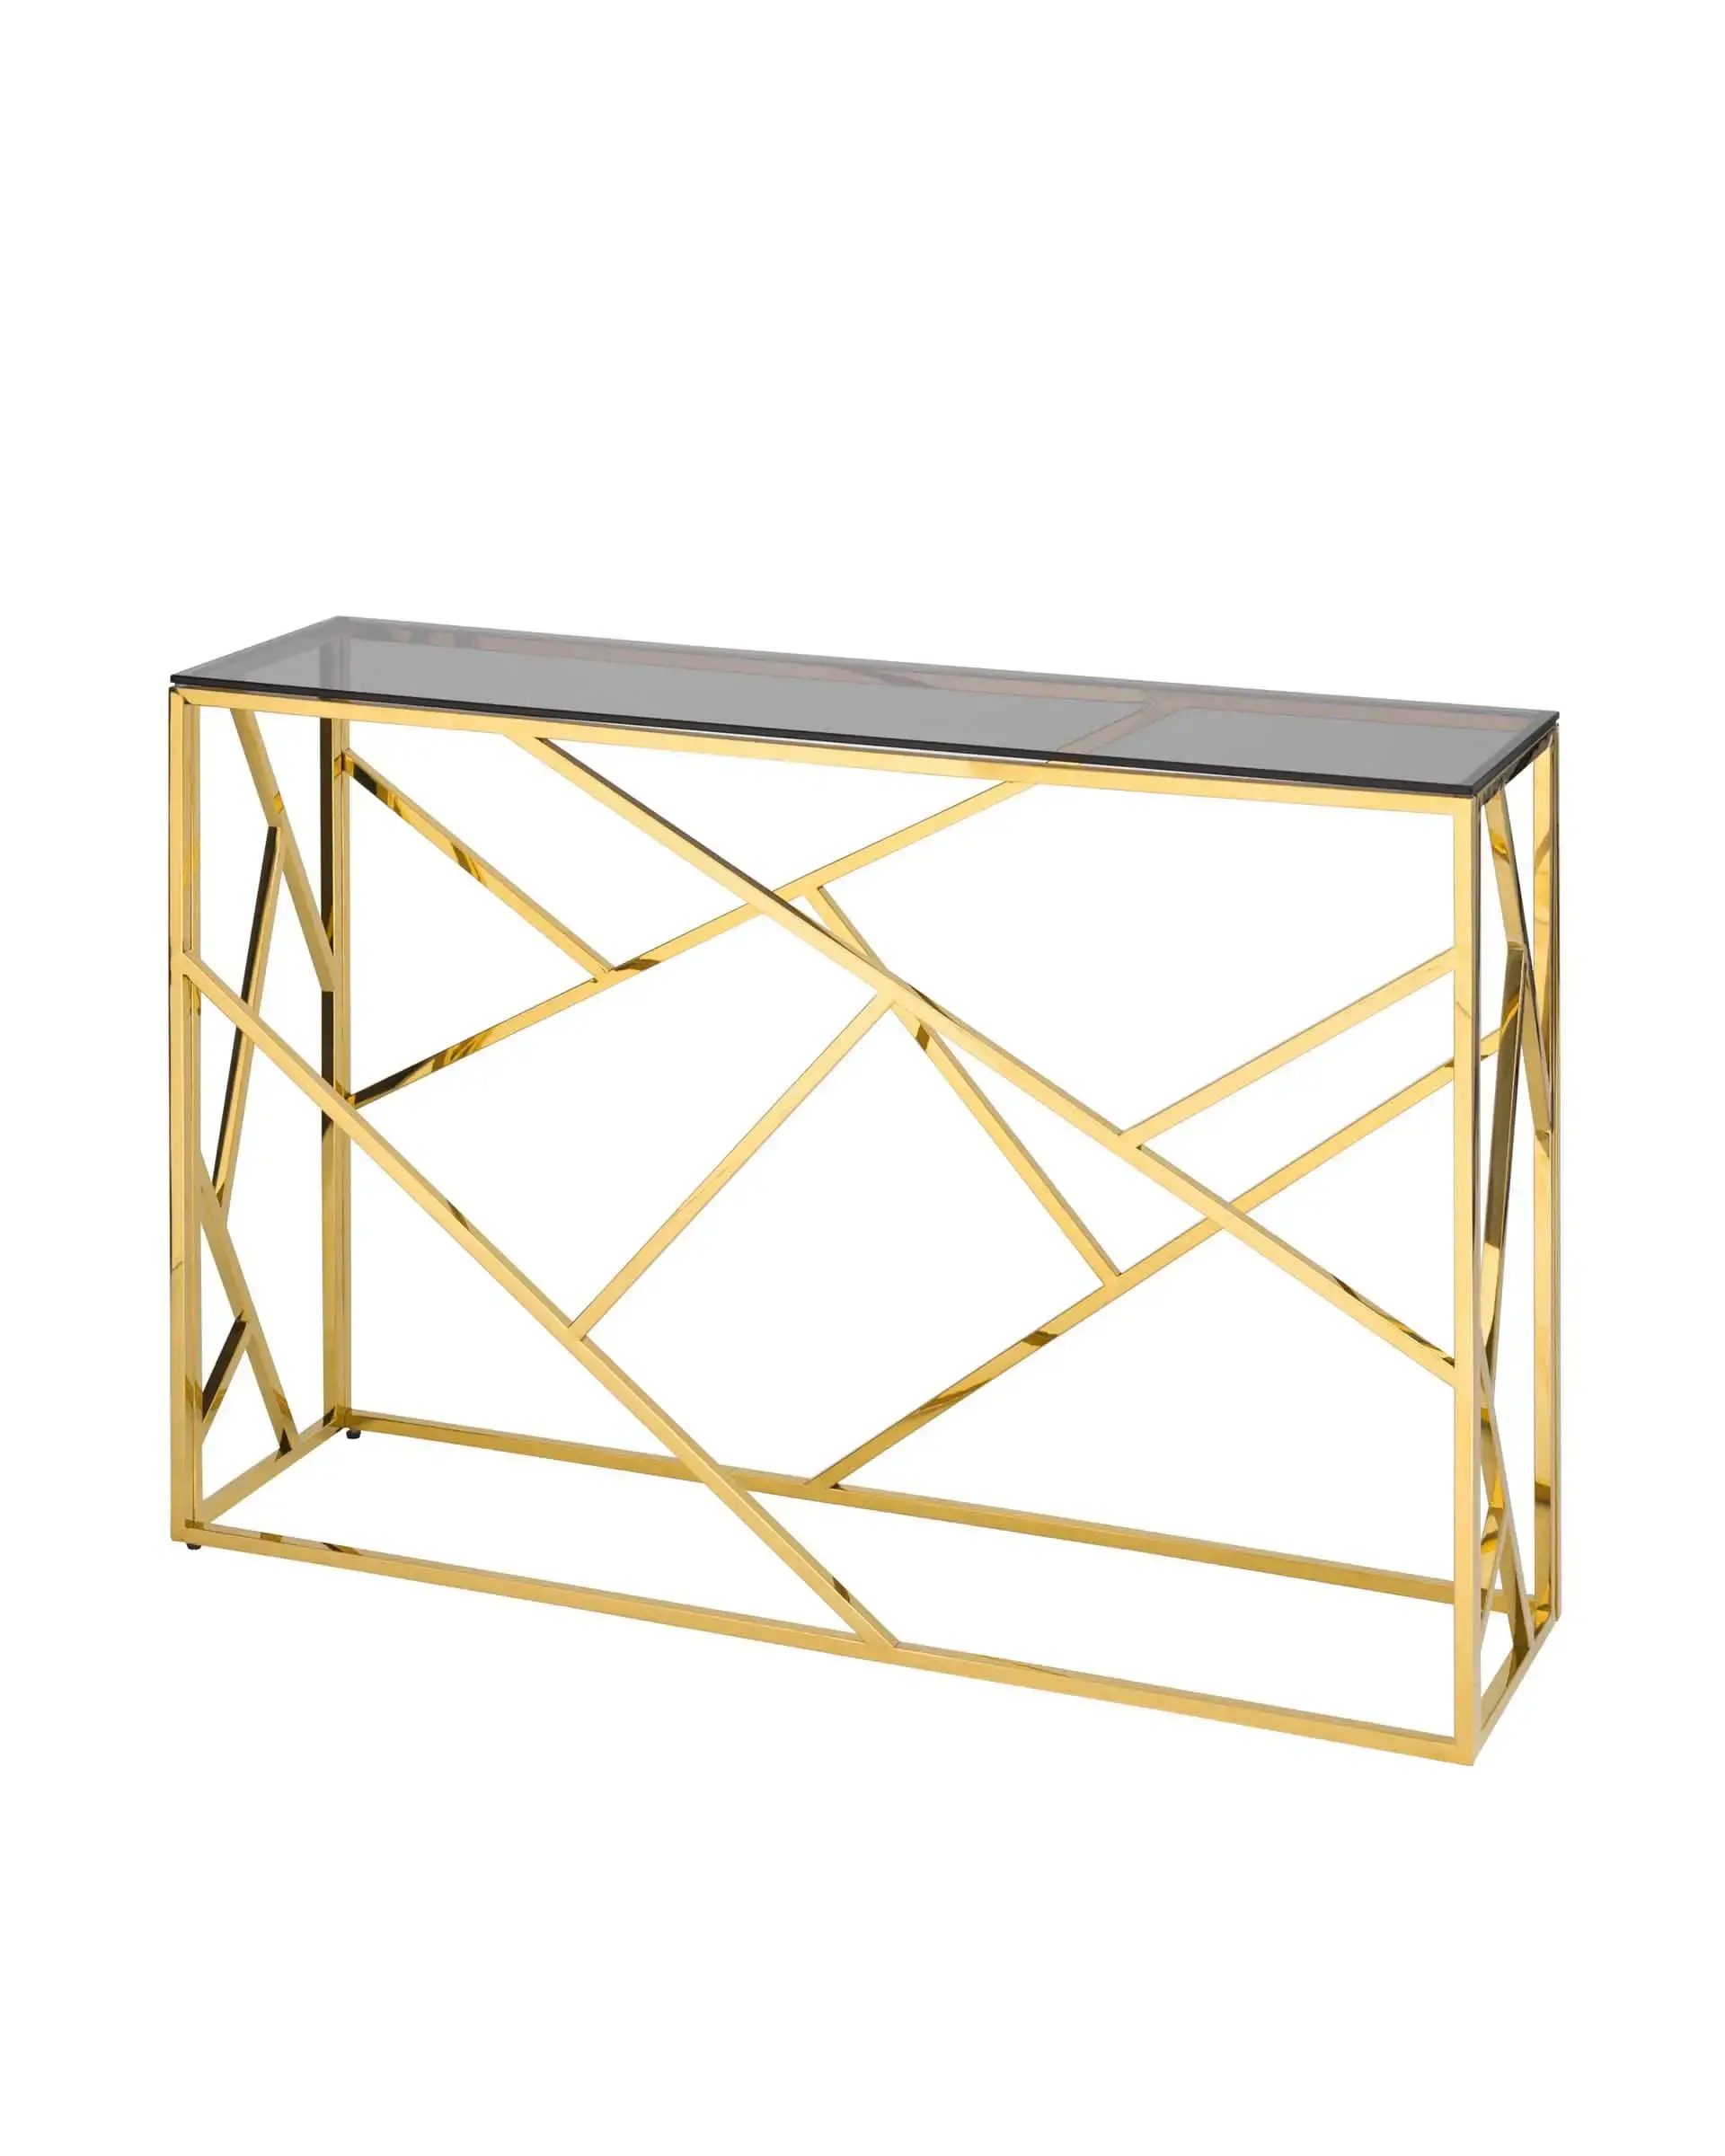 Оптовая продажа, Высококачественная рама из нержавеющей стали, консоль, стол для прихожей, стол для входного стола в золотом цвете